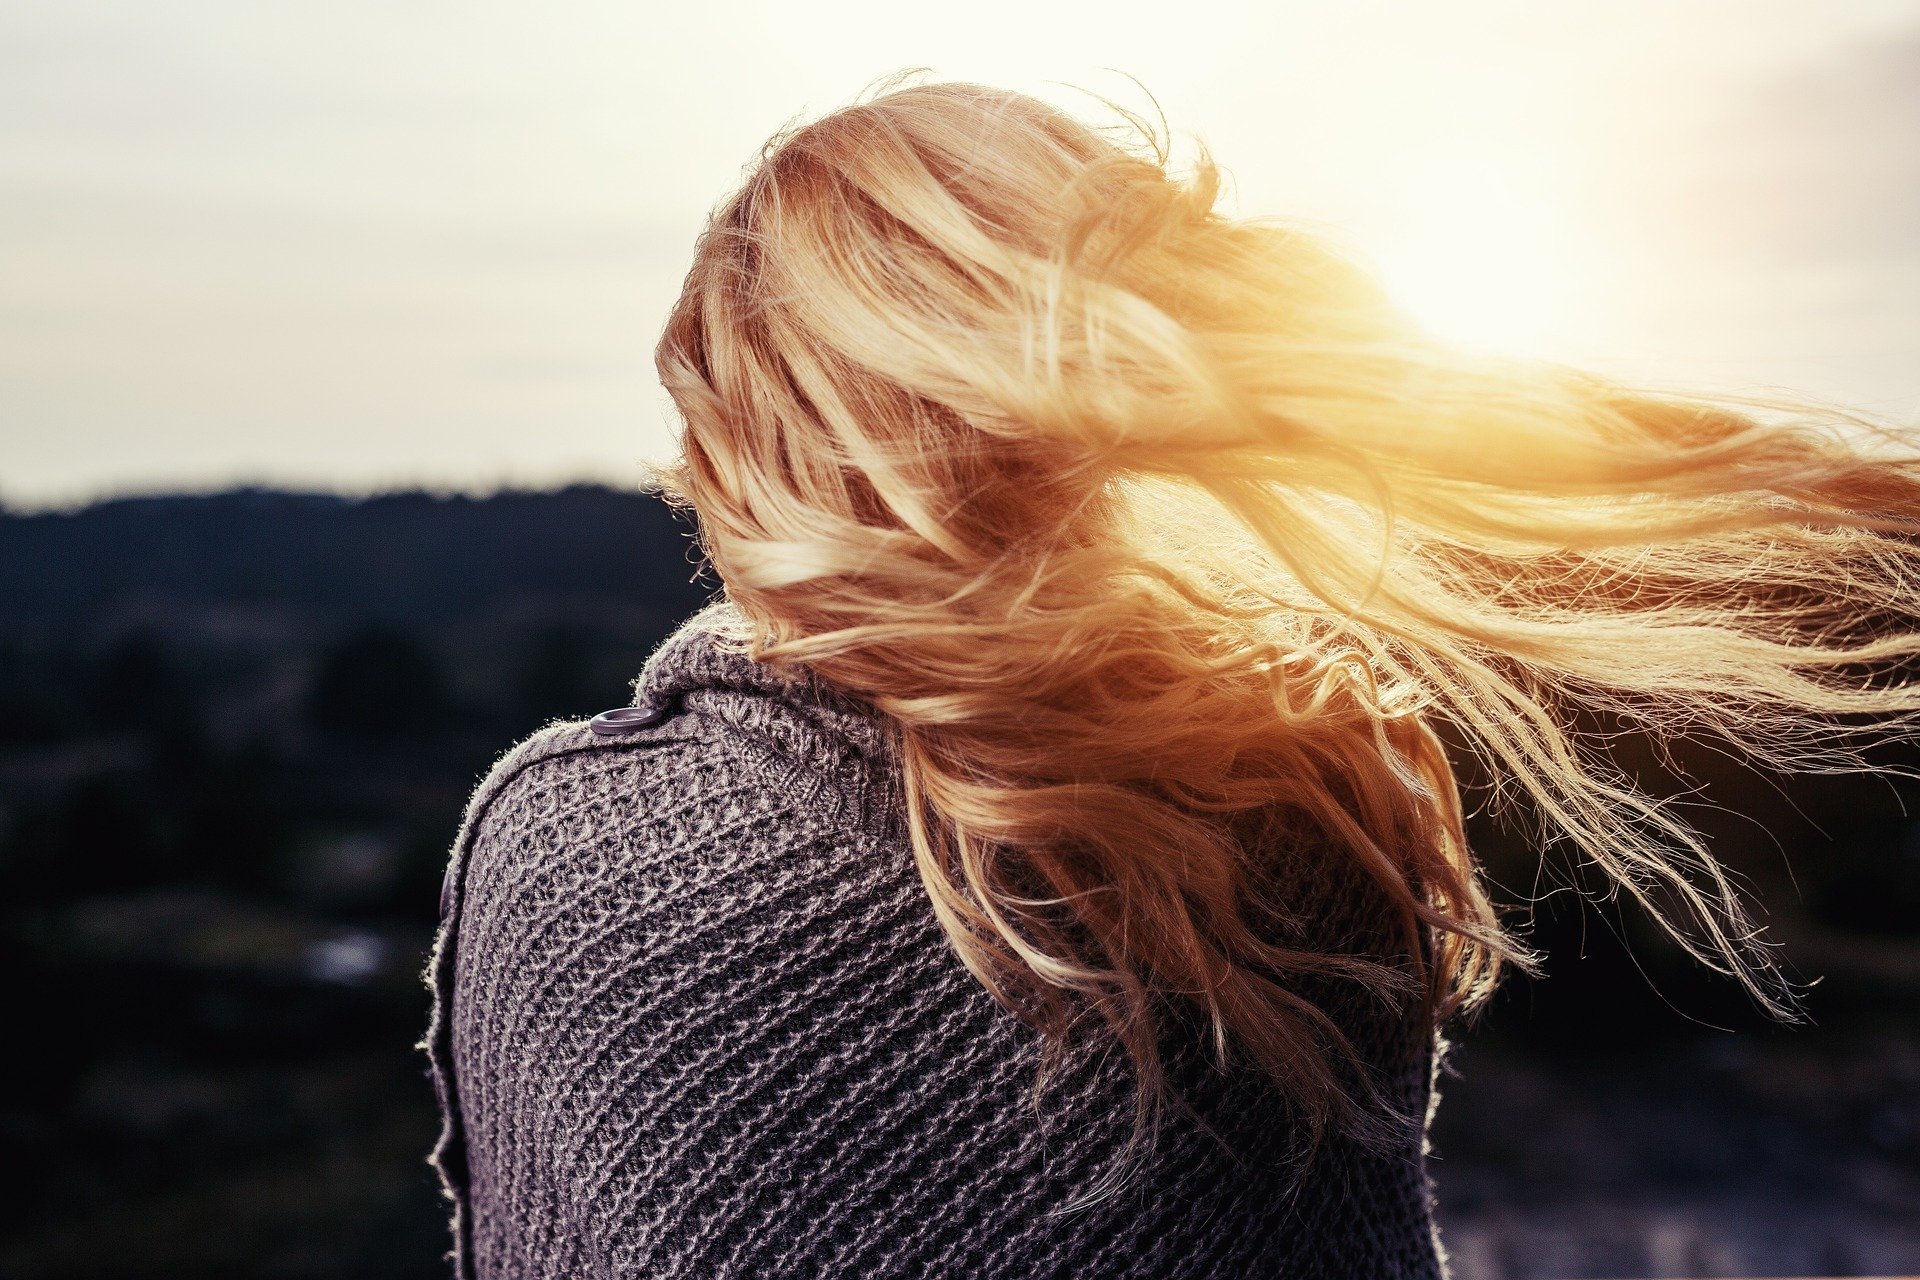 Mulher olhando em direção ao sol com cabelo esvoaçante